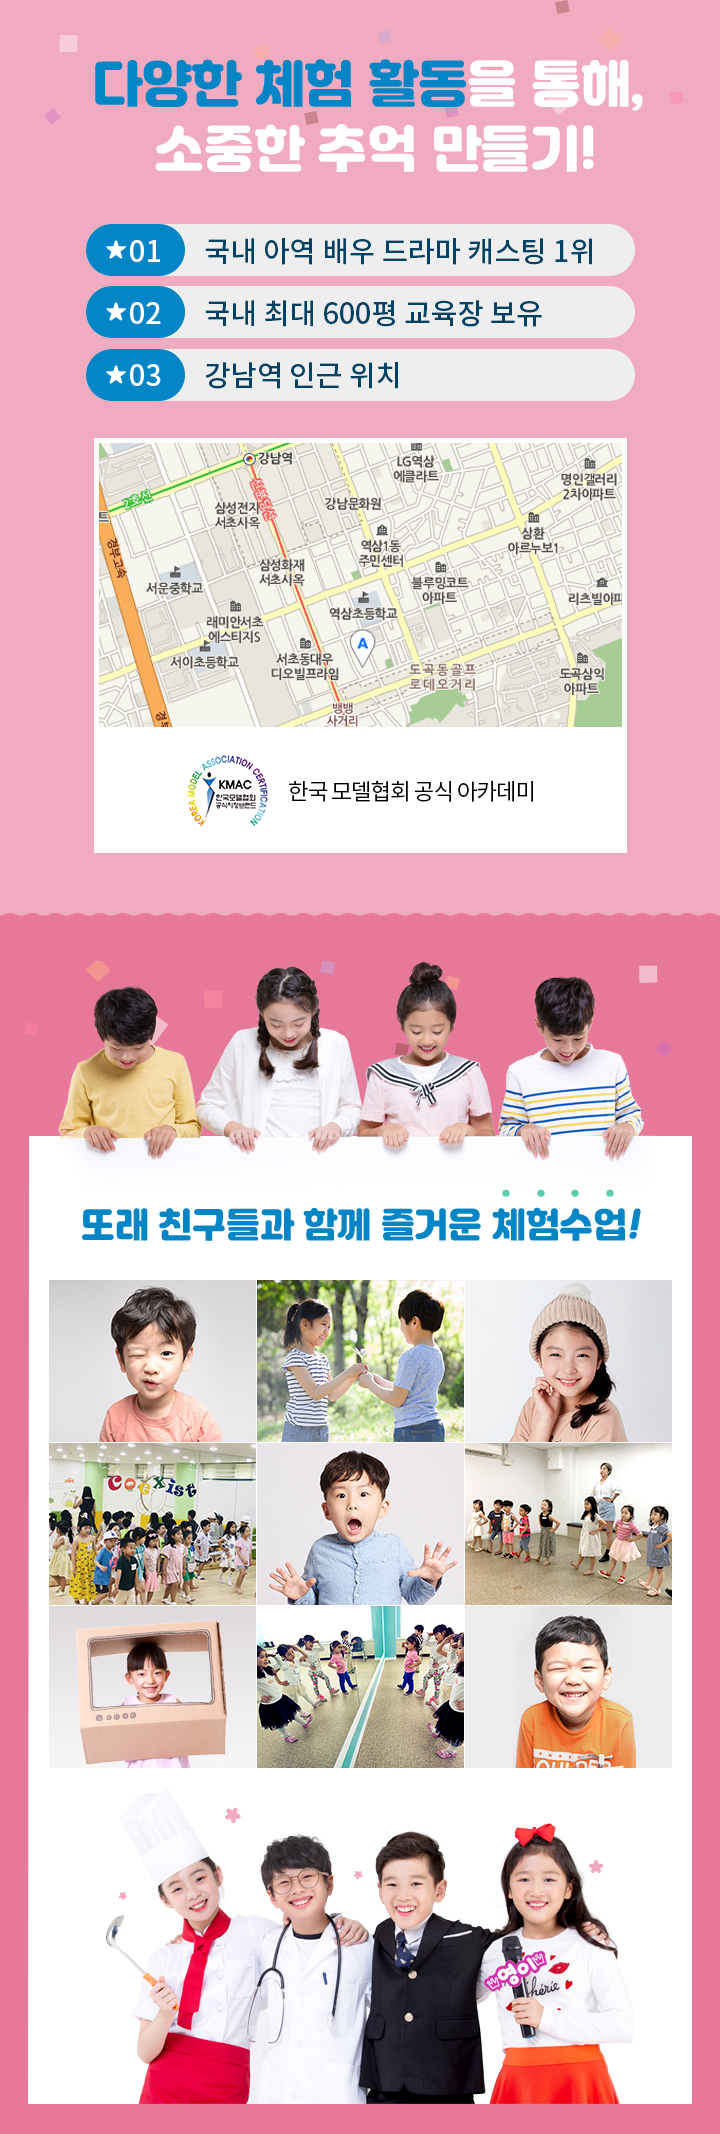 1.국내 아역 배우 드라마 캐스팅 1위 2. 국내 최대 600평 교육장 보유 3. 강남역 인근 위치